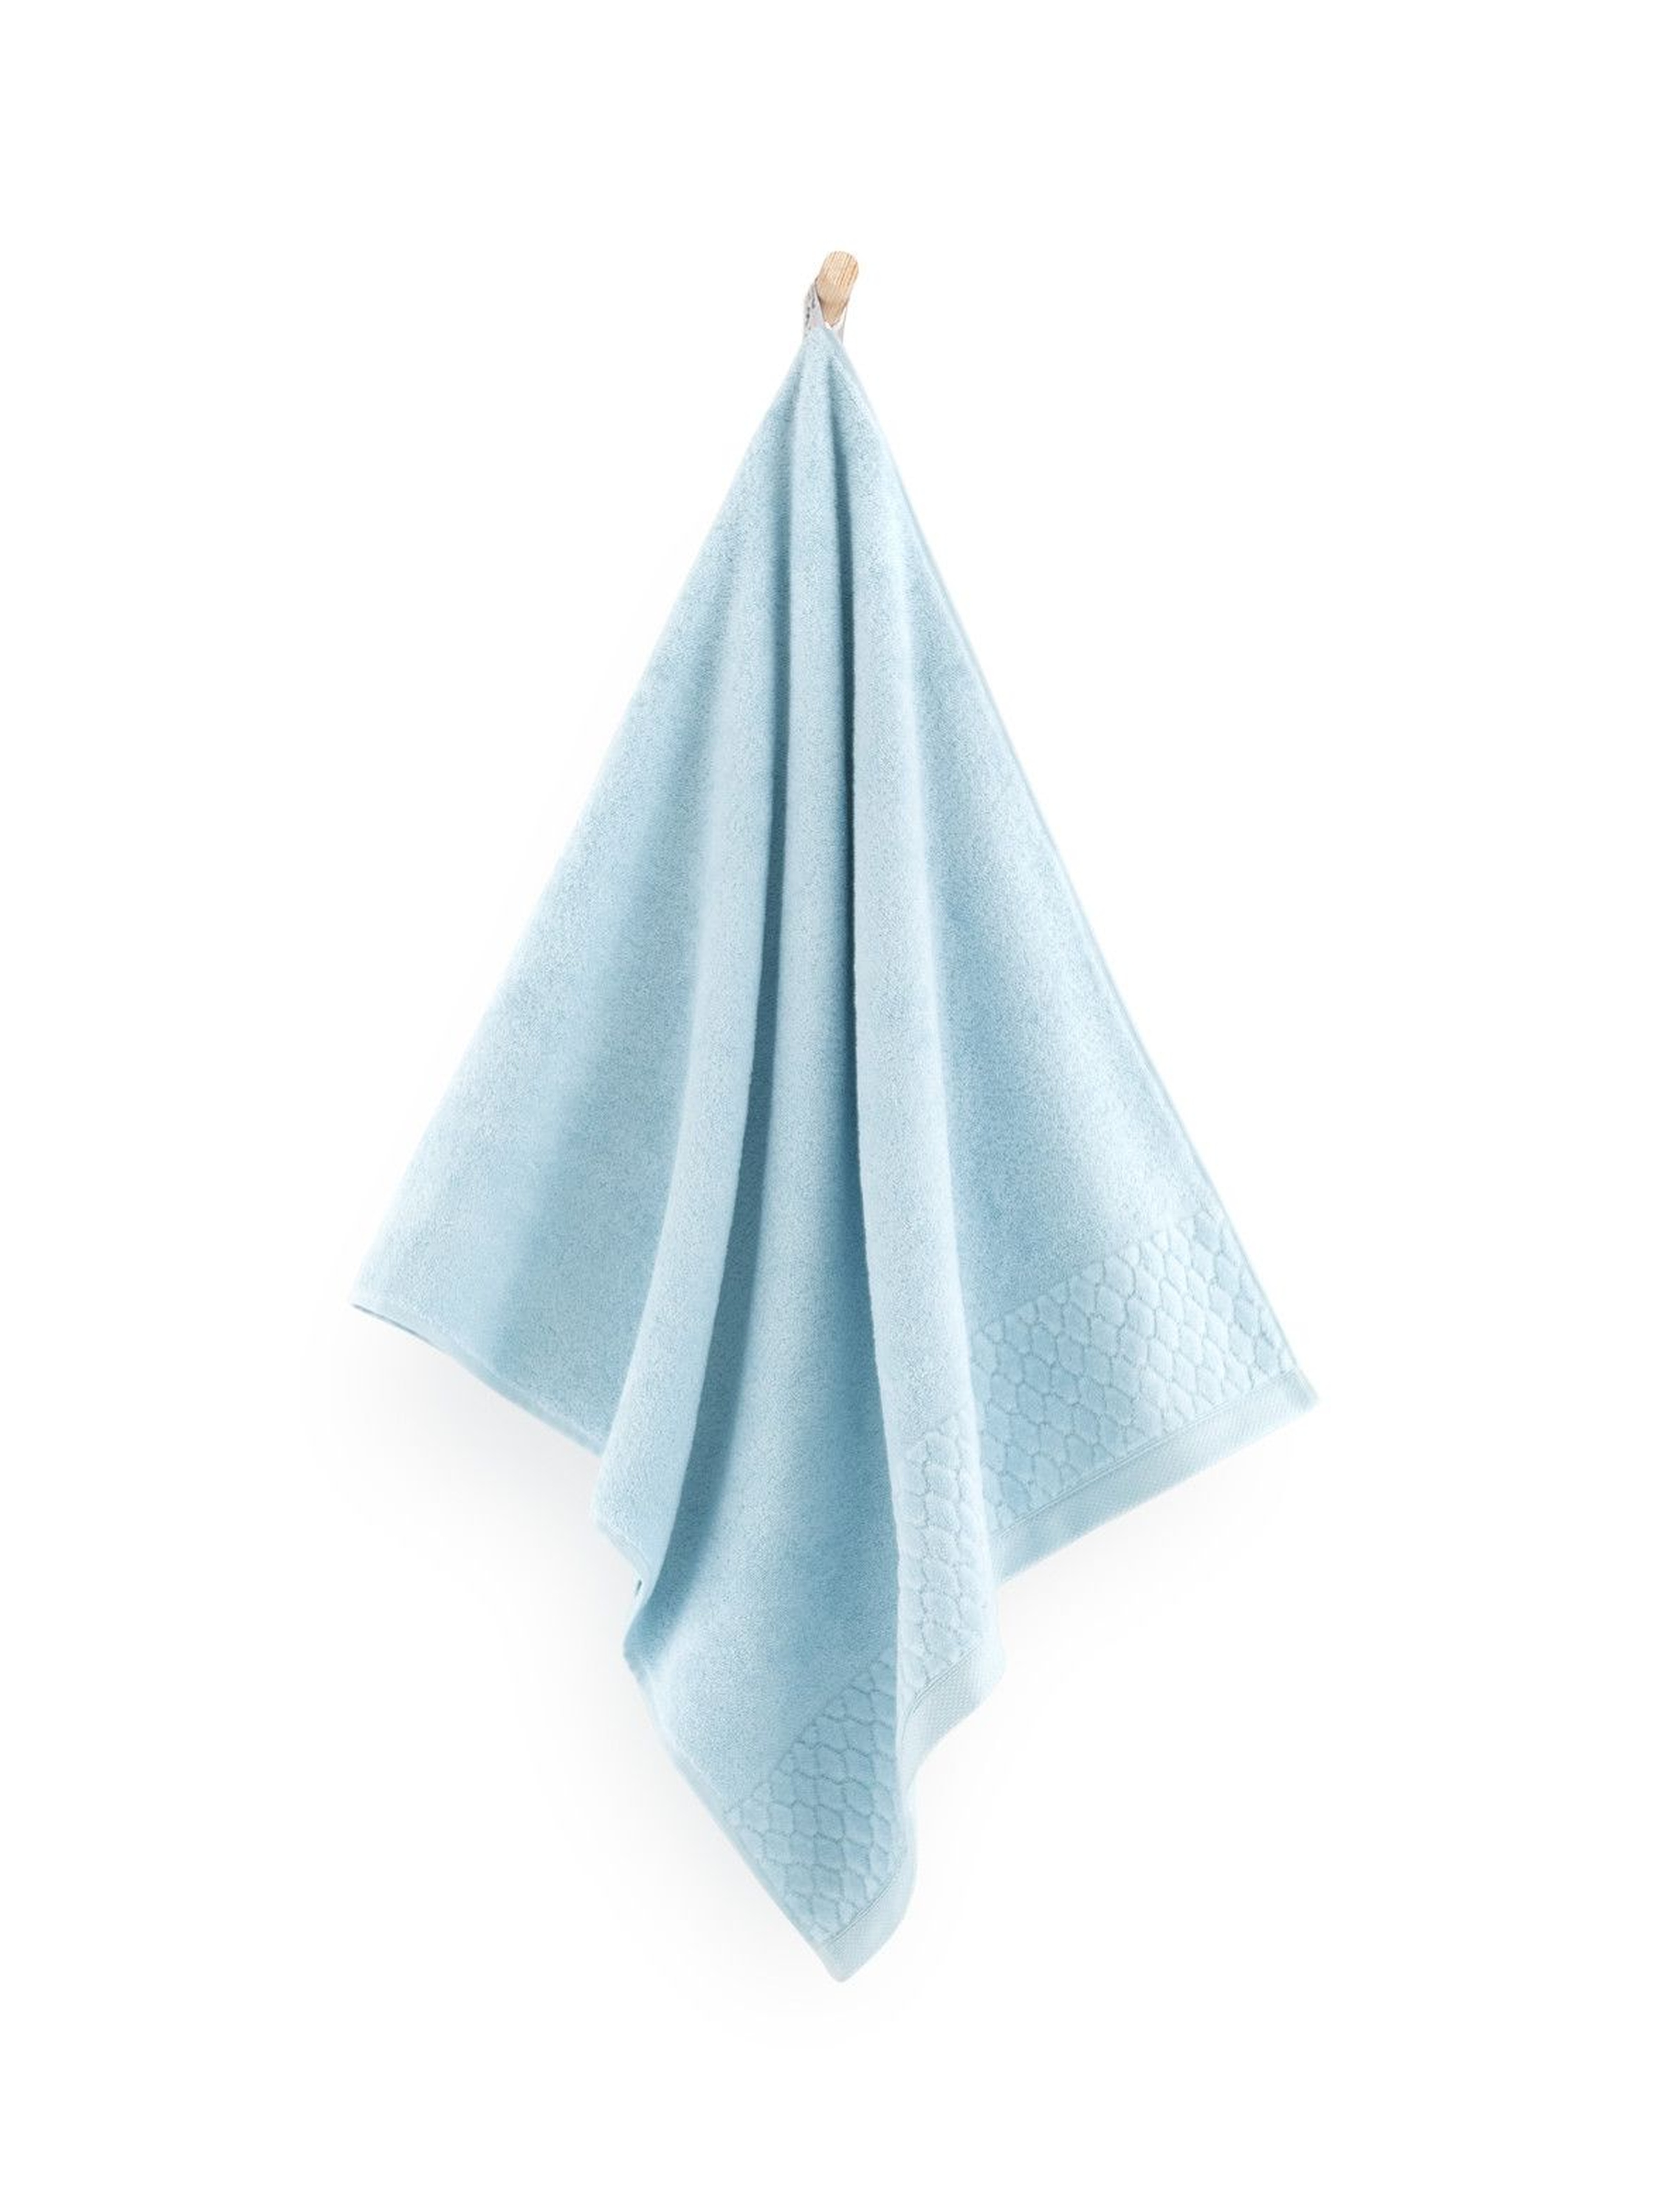 Ręcznik antybakteryjny Carlo z bawełny egipskiej świetlik - 50x100 cm